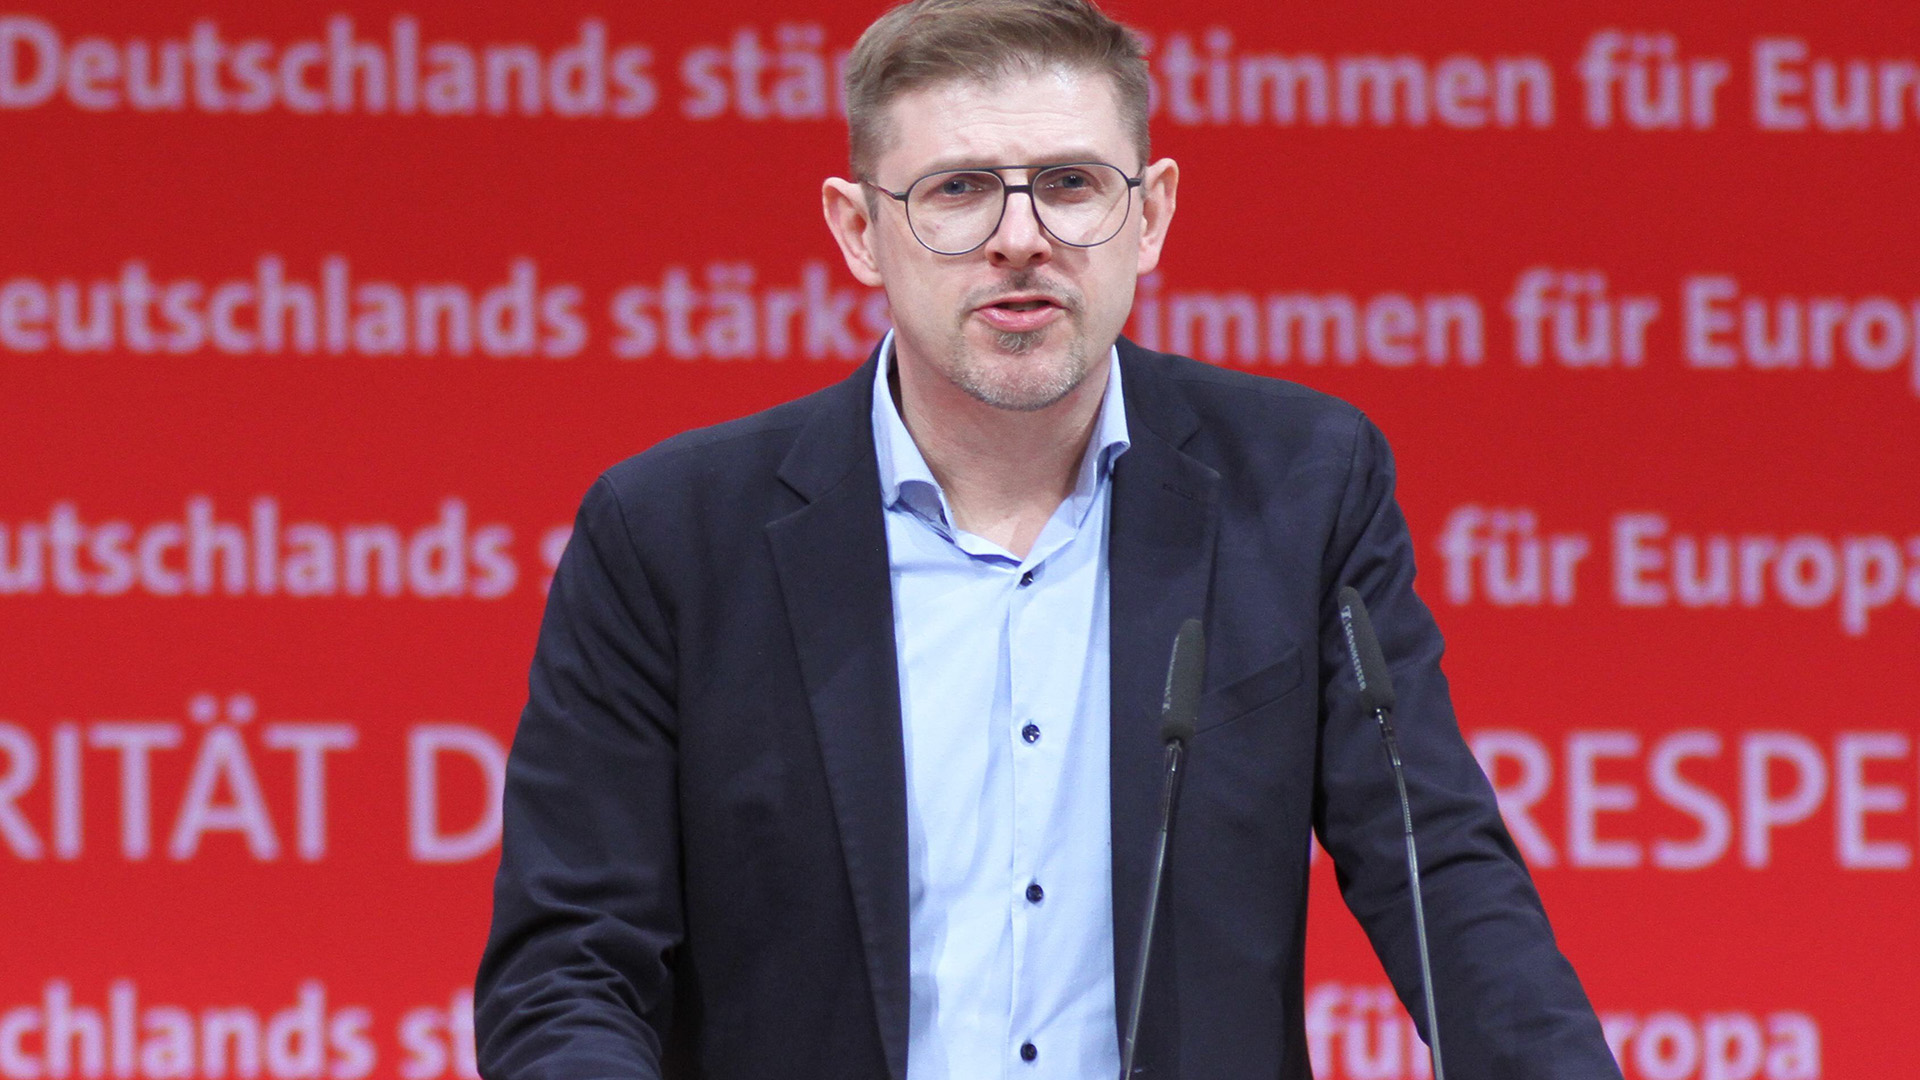 Archivbild: Europaparteitag der SPD: Matthias Ecke. (Quelle: dpa/dts)